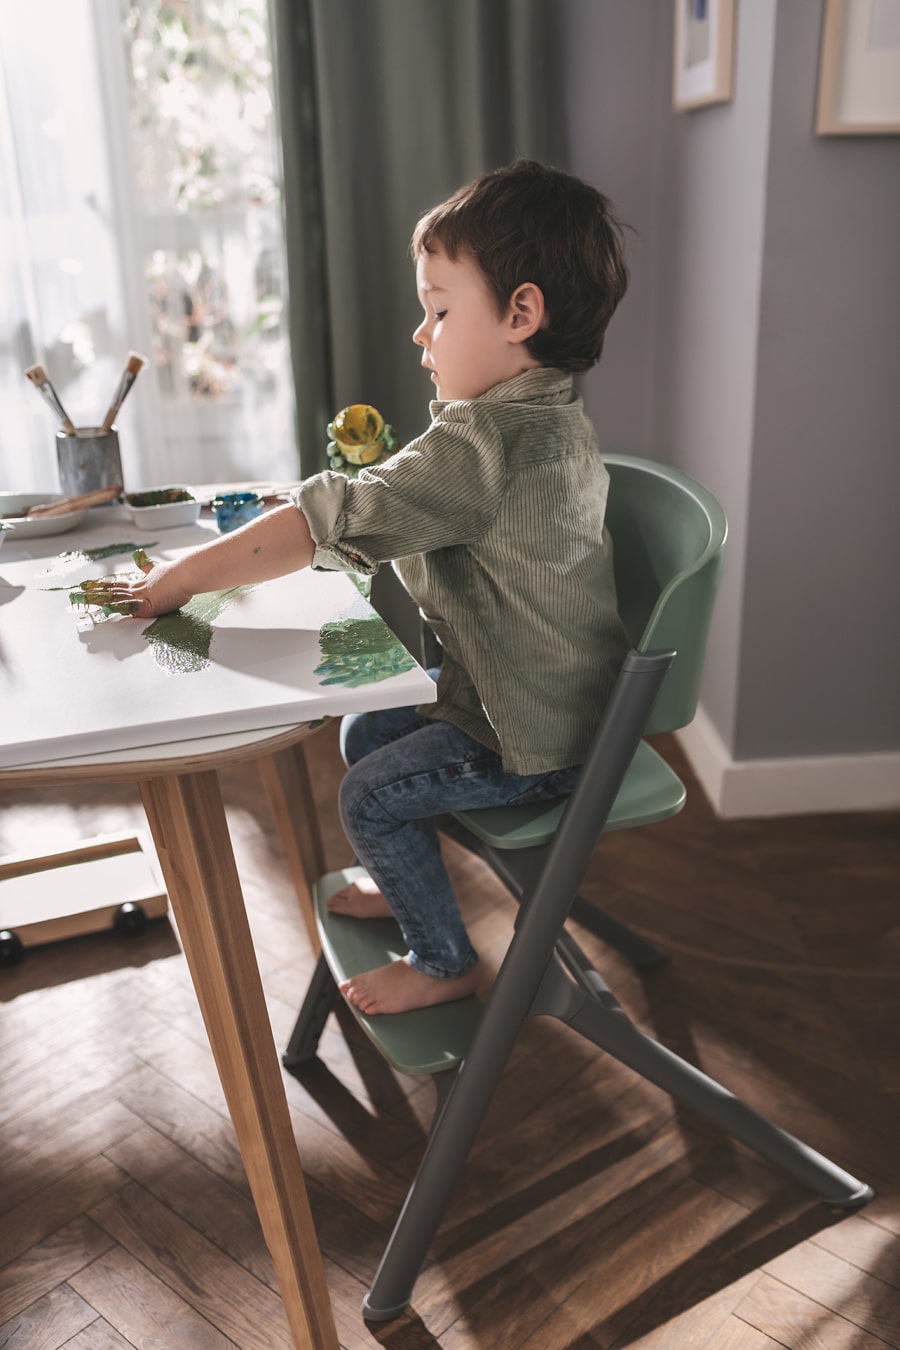 Chłopczyk siedzi na krzesełku do karmienia LIVY Kinderkraft, maluje palcami na płótnie, jest skupiony i zrelaksowany